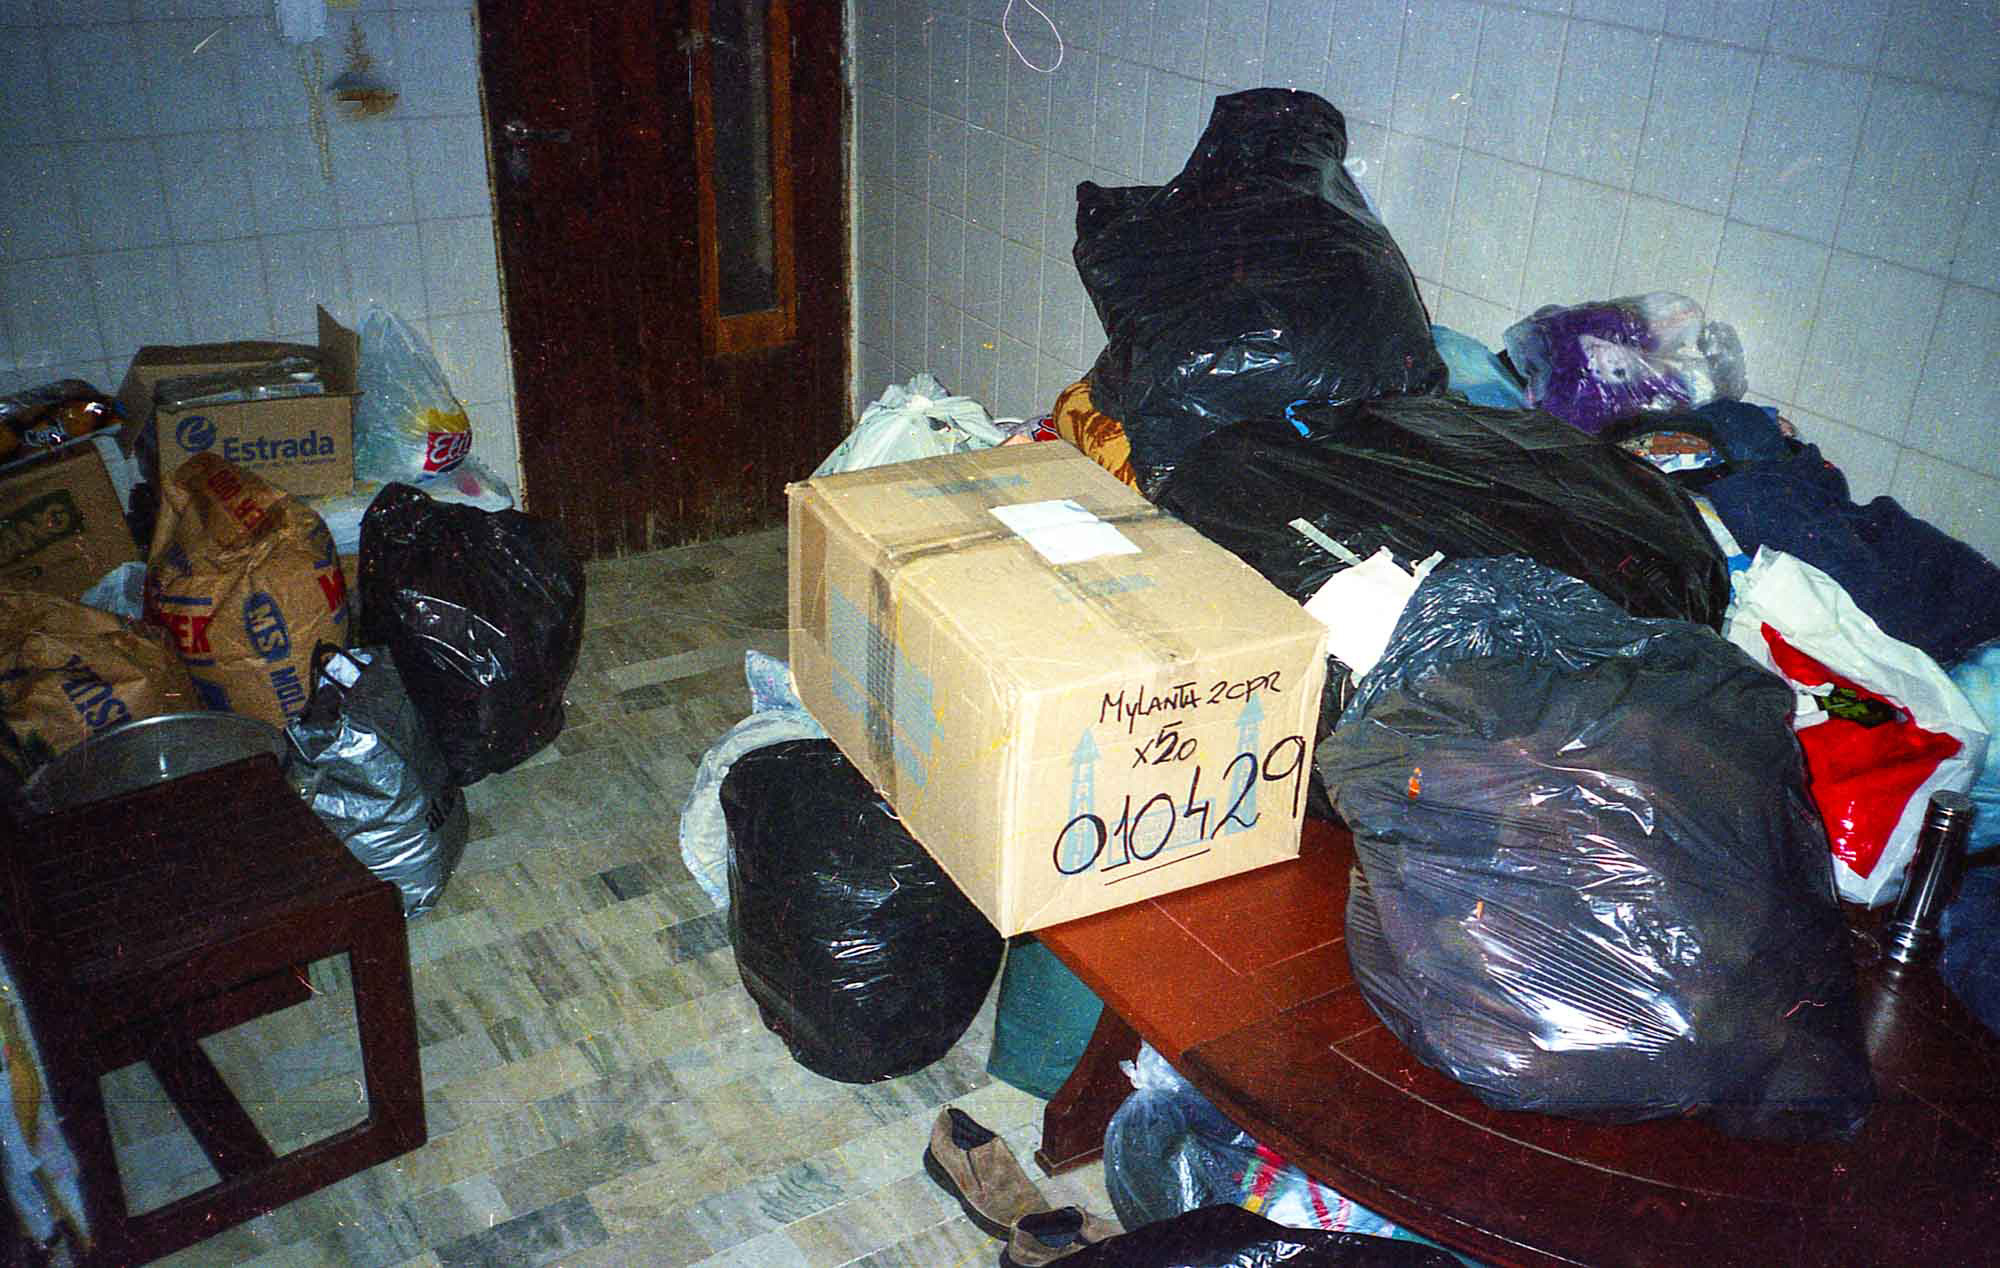 Bolsas de consorcio repletas de donaciones, cajas embaladas, bolsas de harina y alimentos